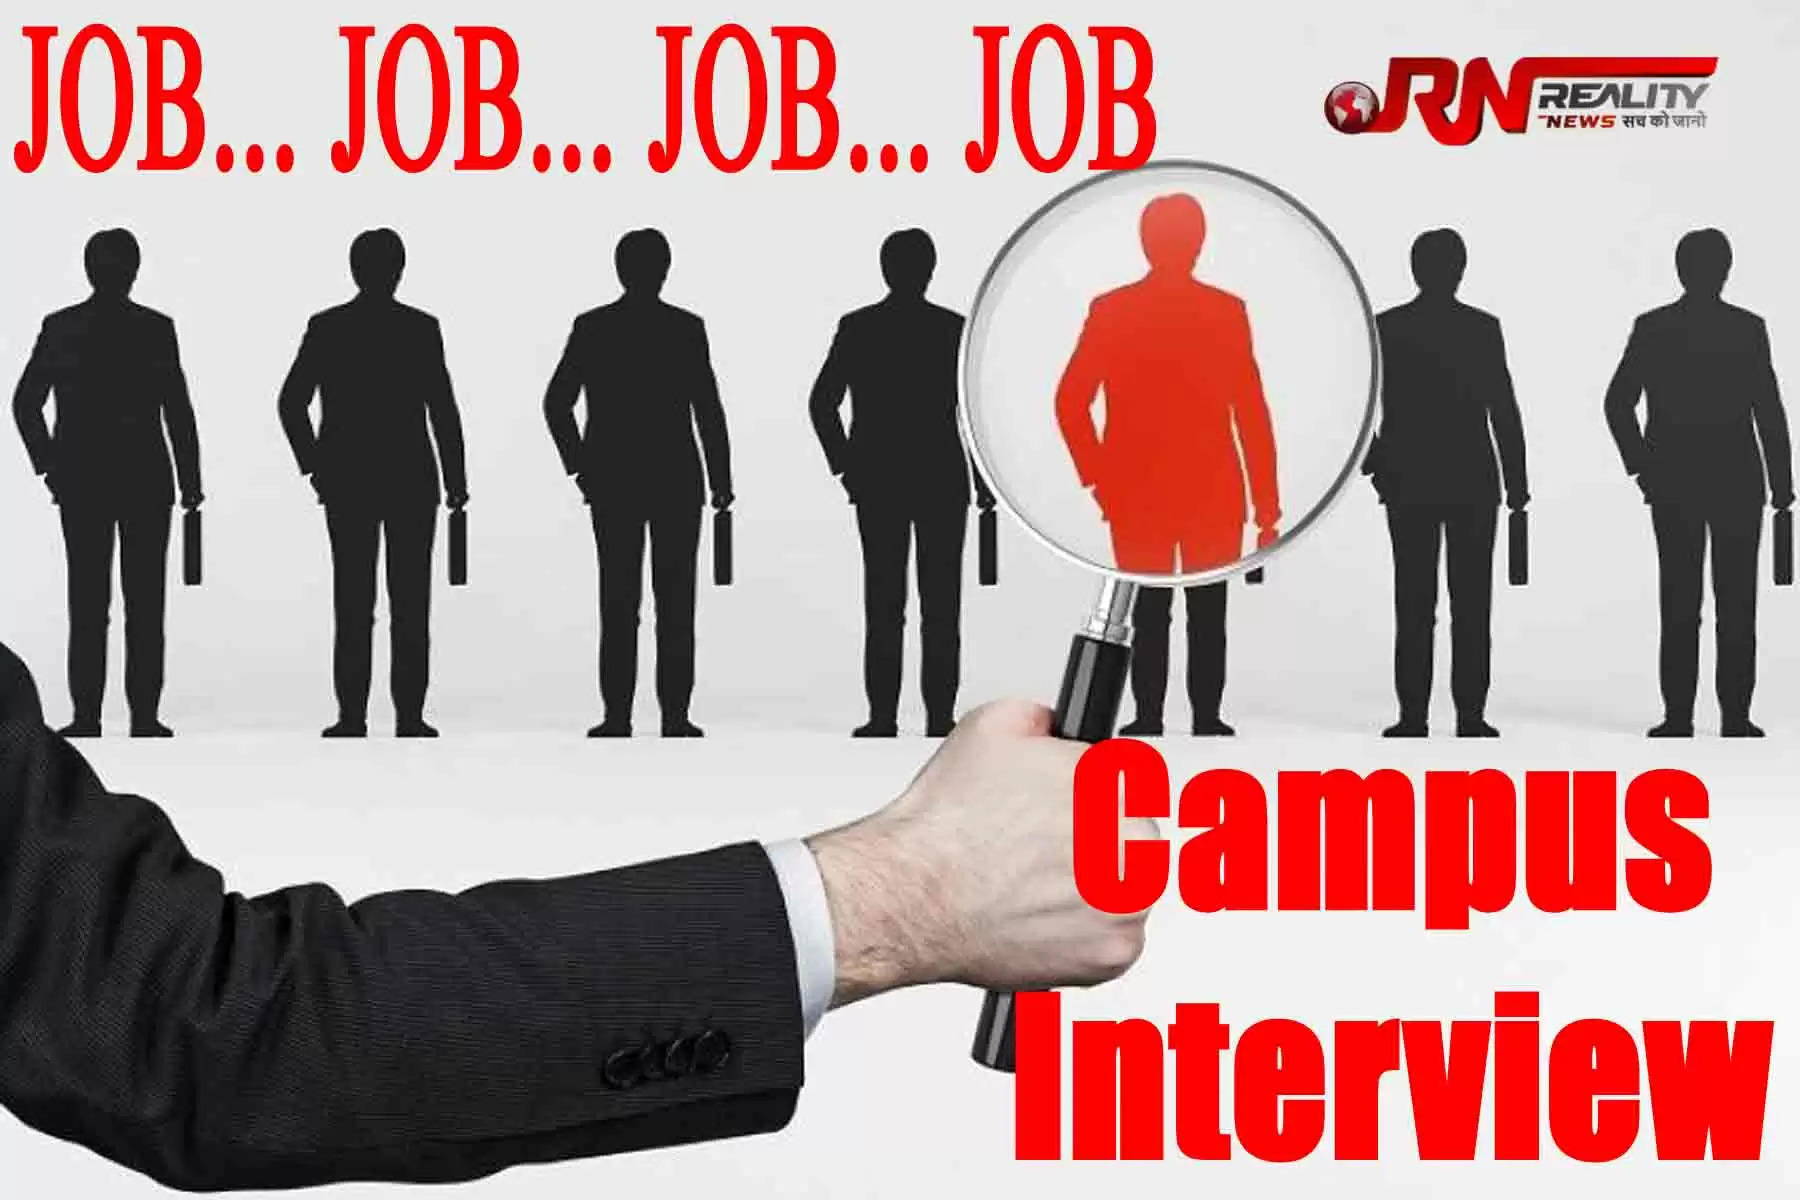 Campus Interview Job कैंपस इंटरव्यू नौकरी। ला रोजगार अधिकारी अरविंद सिंह चौहान ने जानकारी देते हुए बताया कि रोजगार कार्यालय चंबा द्वारा उप रोजगार कार्यालय चुवाड़ी में कैंपस इंटरव्यू का आयोजन किया जा रहा है। 